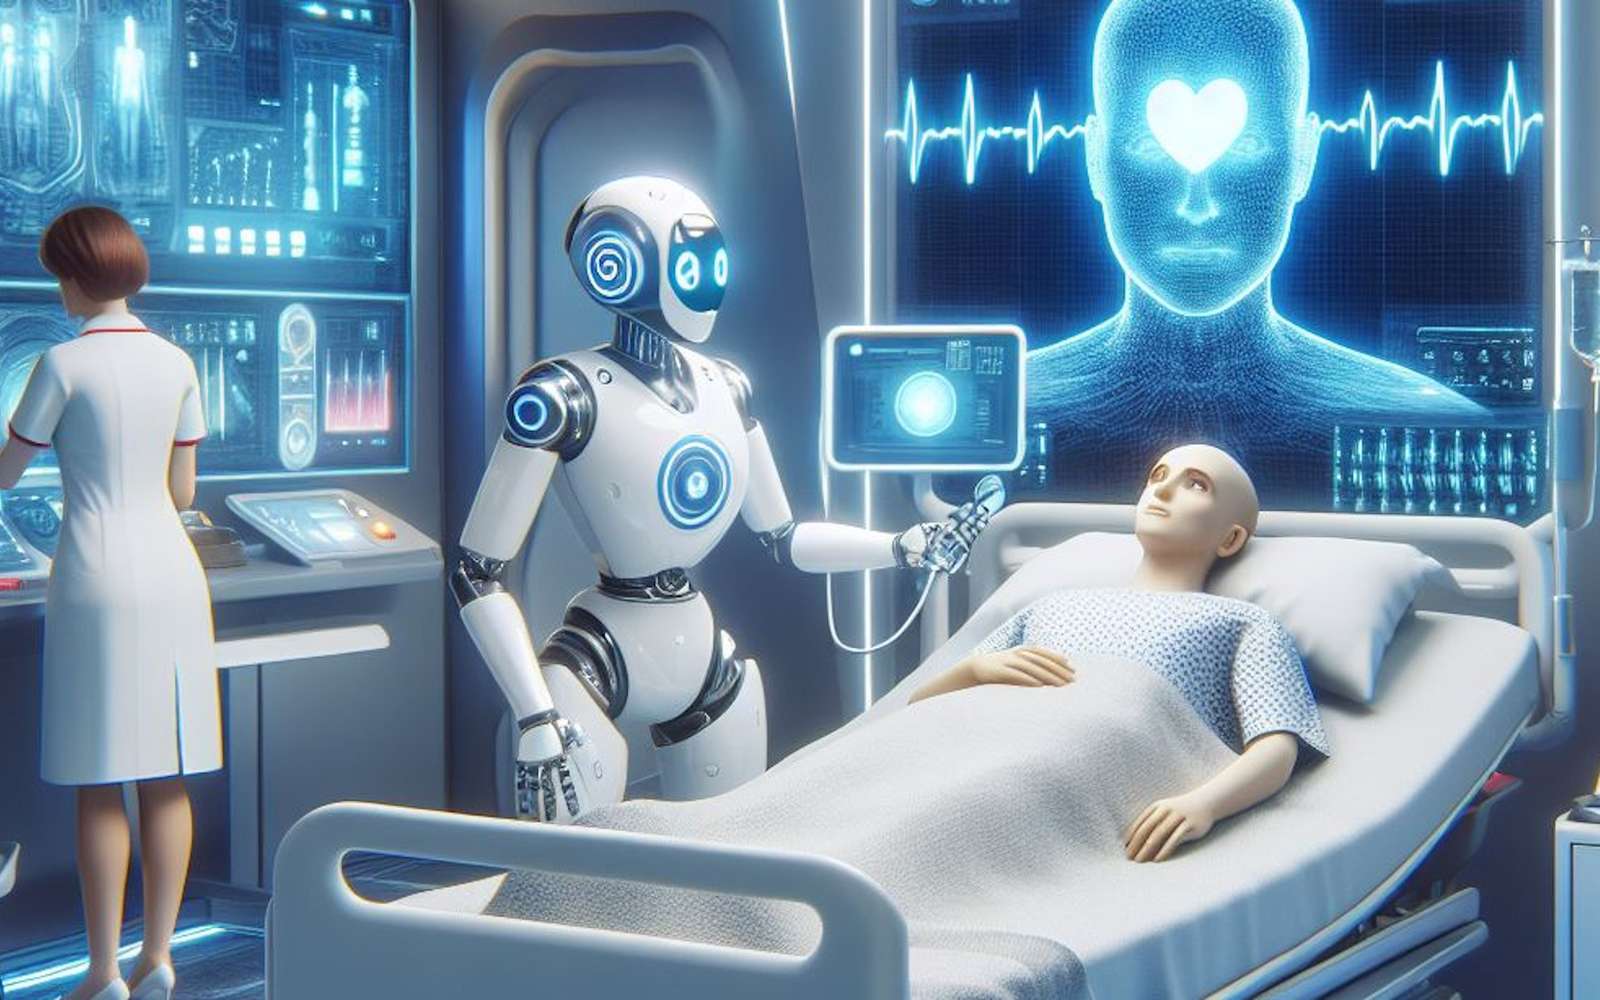 Ce géant de l'informatique veut remplacer le personnel de santé par l'intelligence artificielle